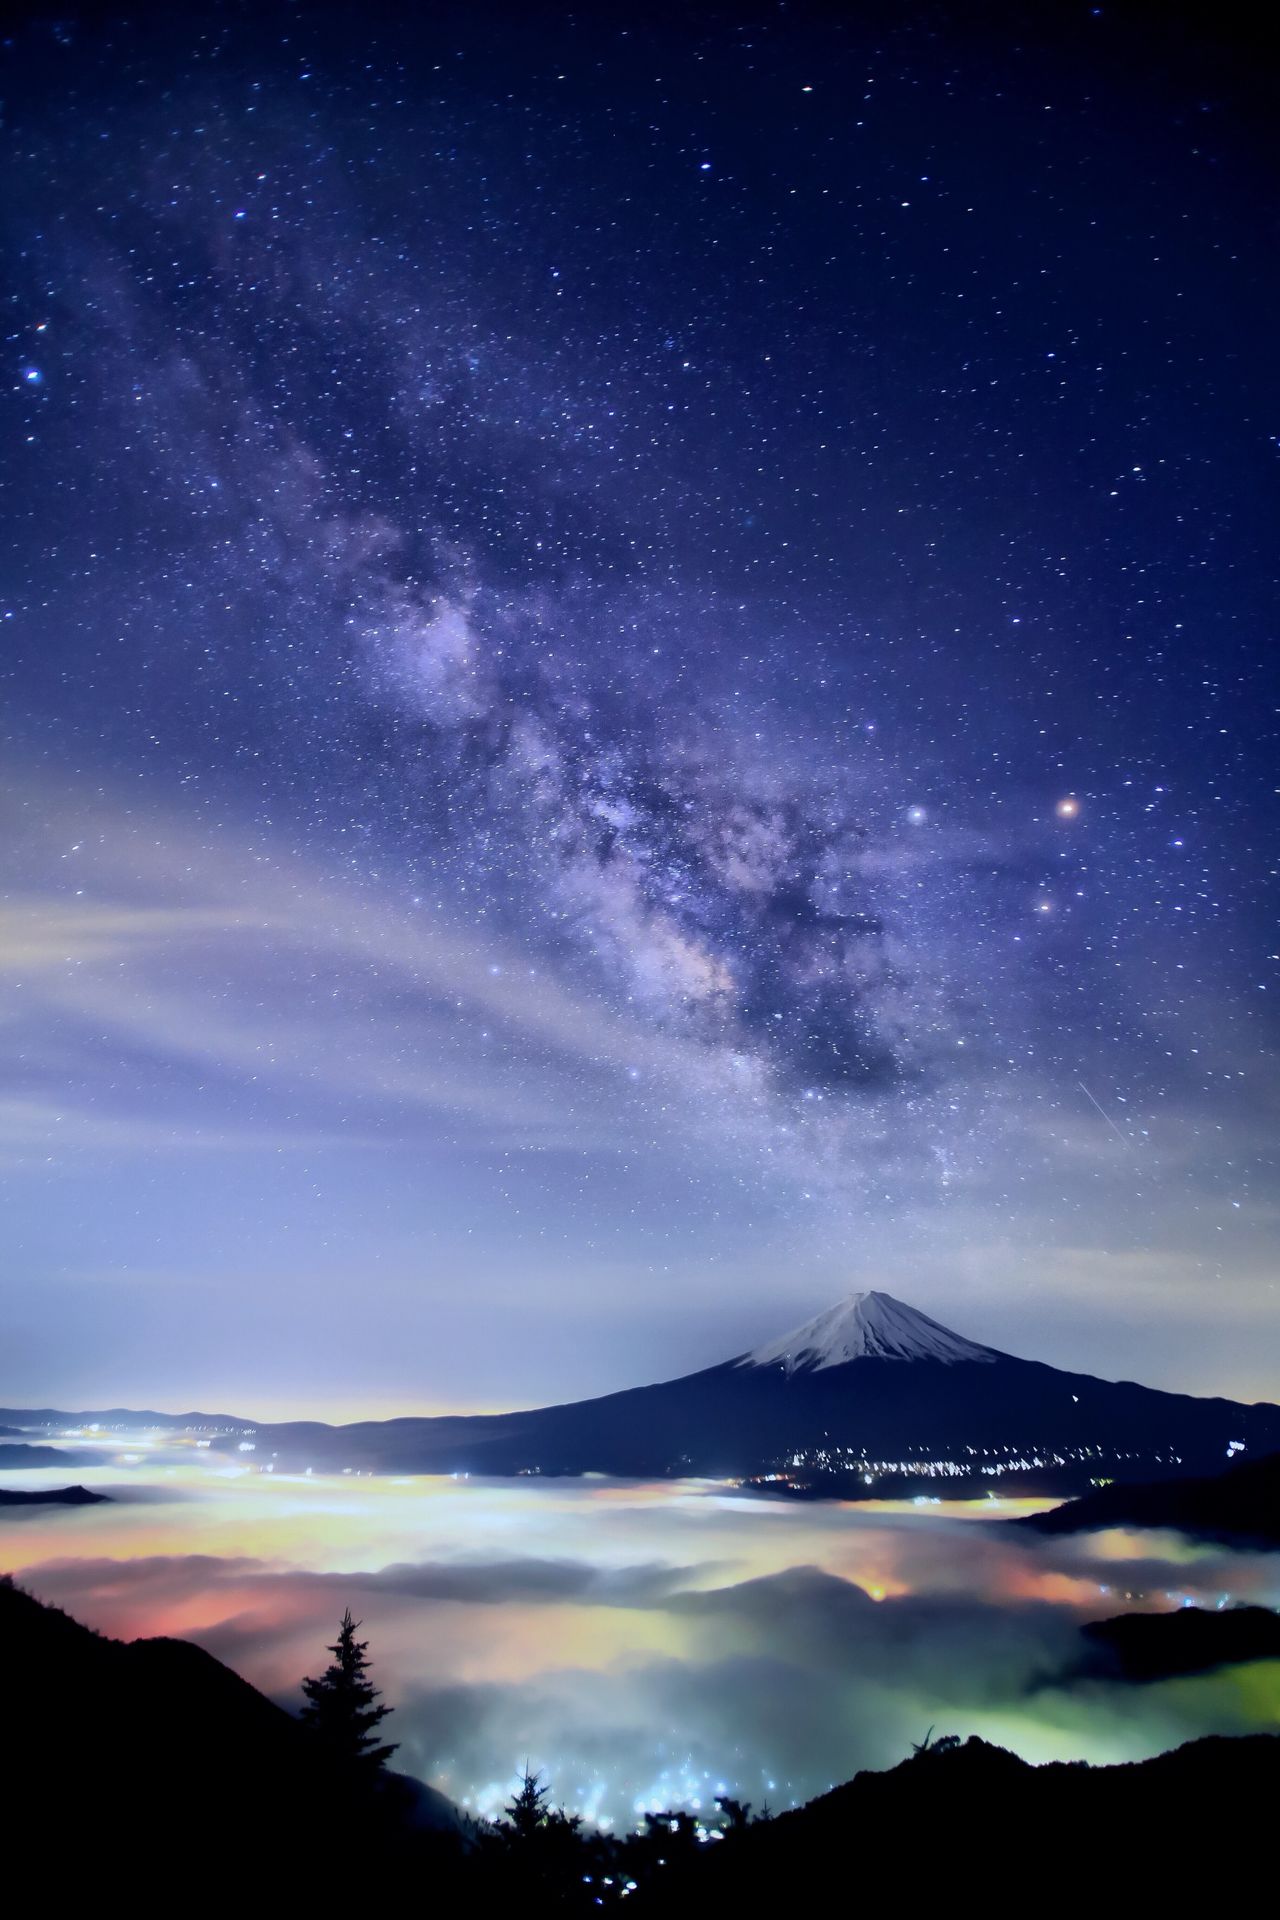 桥向摄影作品的星空之美已有定论。富士山与银河，以及映在云海中如梦似幻的城市灯光完美地融为一体（图片：桥向真）